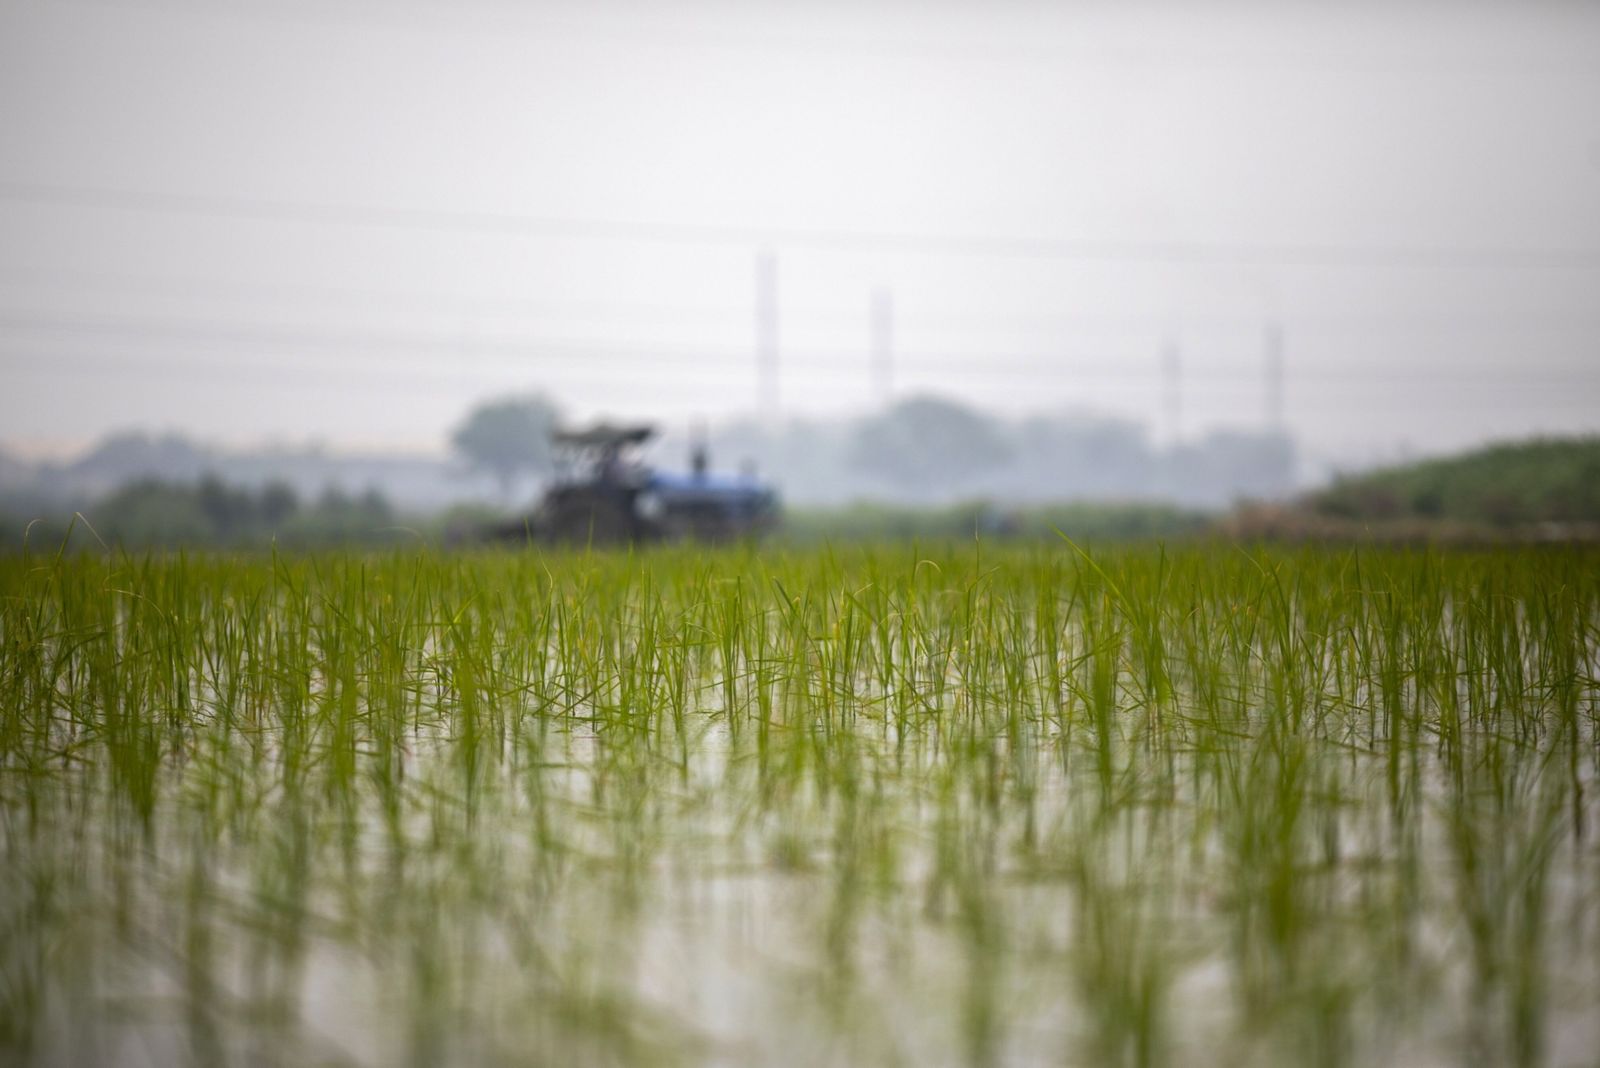 الهند تقيد صادرات الأرز بمختلف أنواعه